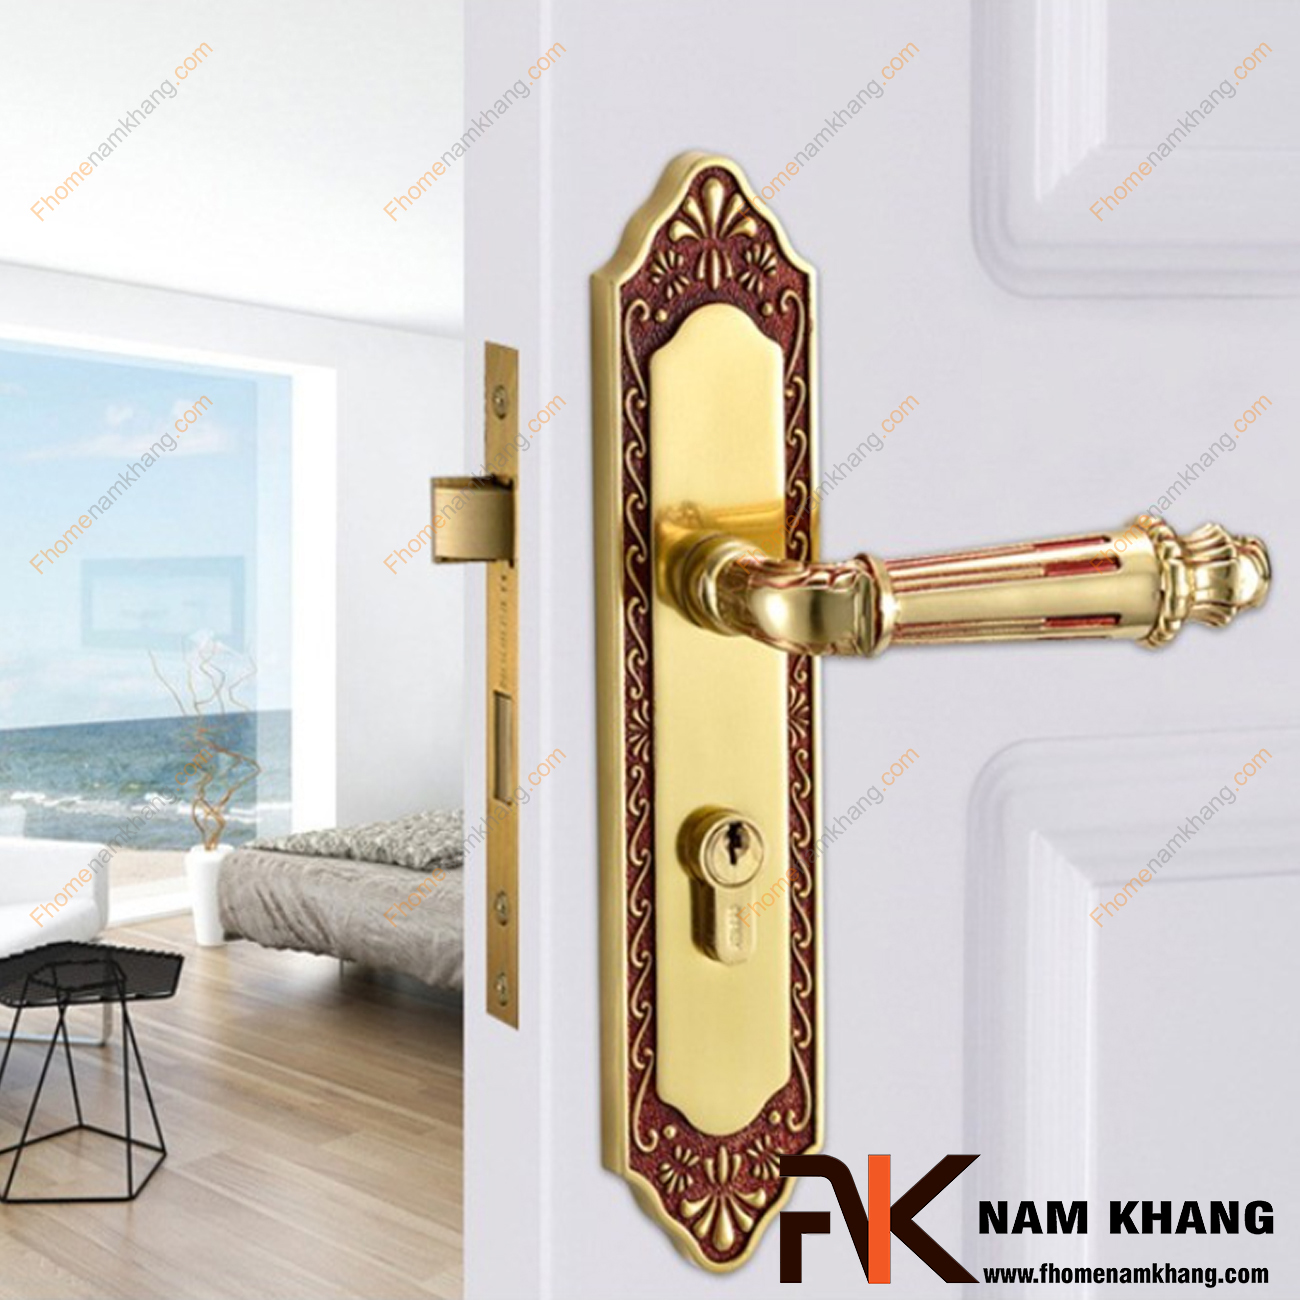 Khóa cửa chính cổ điển bằng đồng cao cấp NK345L-RC là bộ khóa cửa dành cho các dạng cửa chính lớn, cao cấp, cửa 2 cánh hoặc 4 cánh.